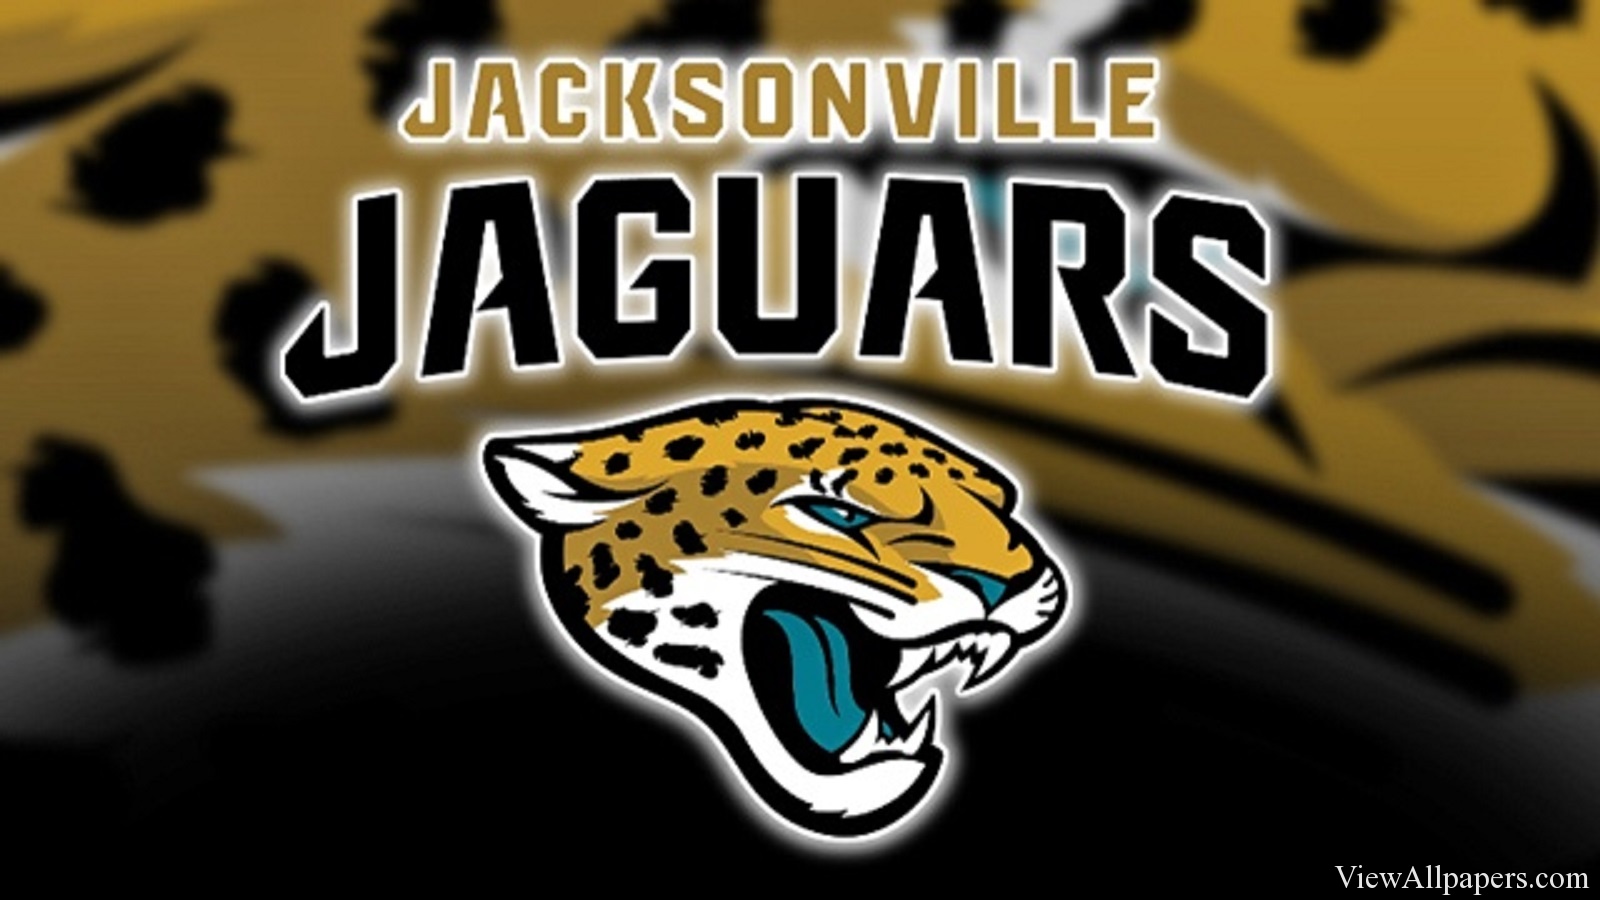 fond d'écran jacksonville jaguars,jaguar,félidés,gros chats,faune,rugir